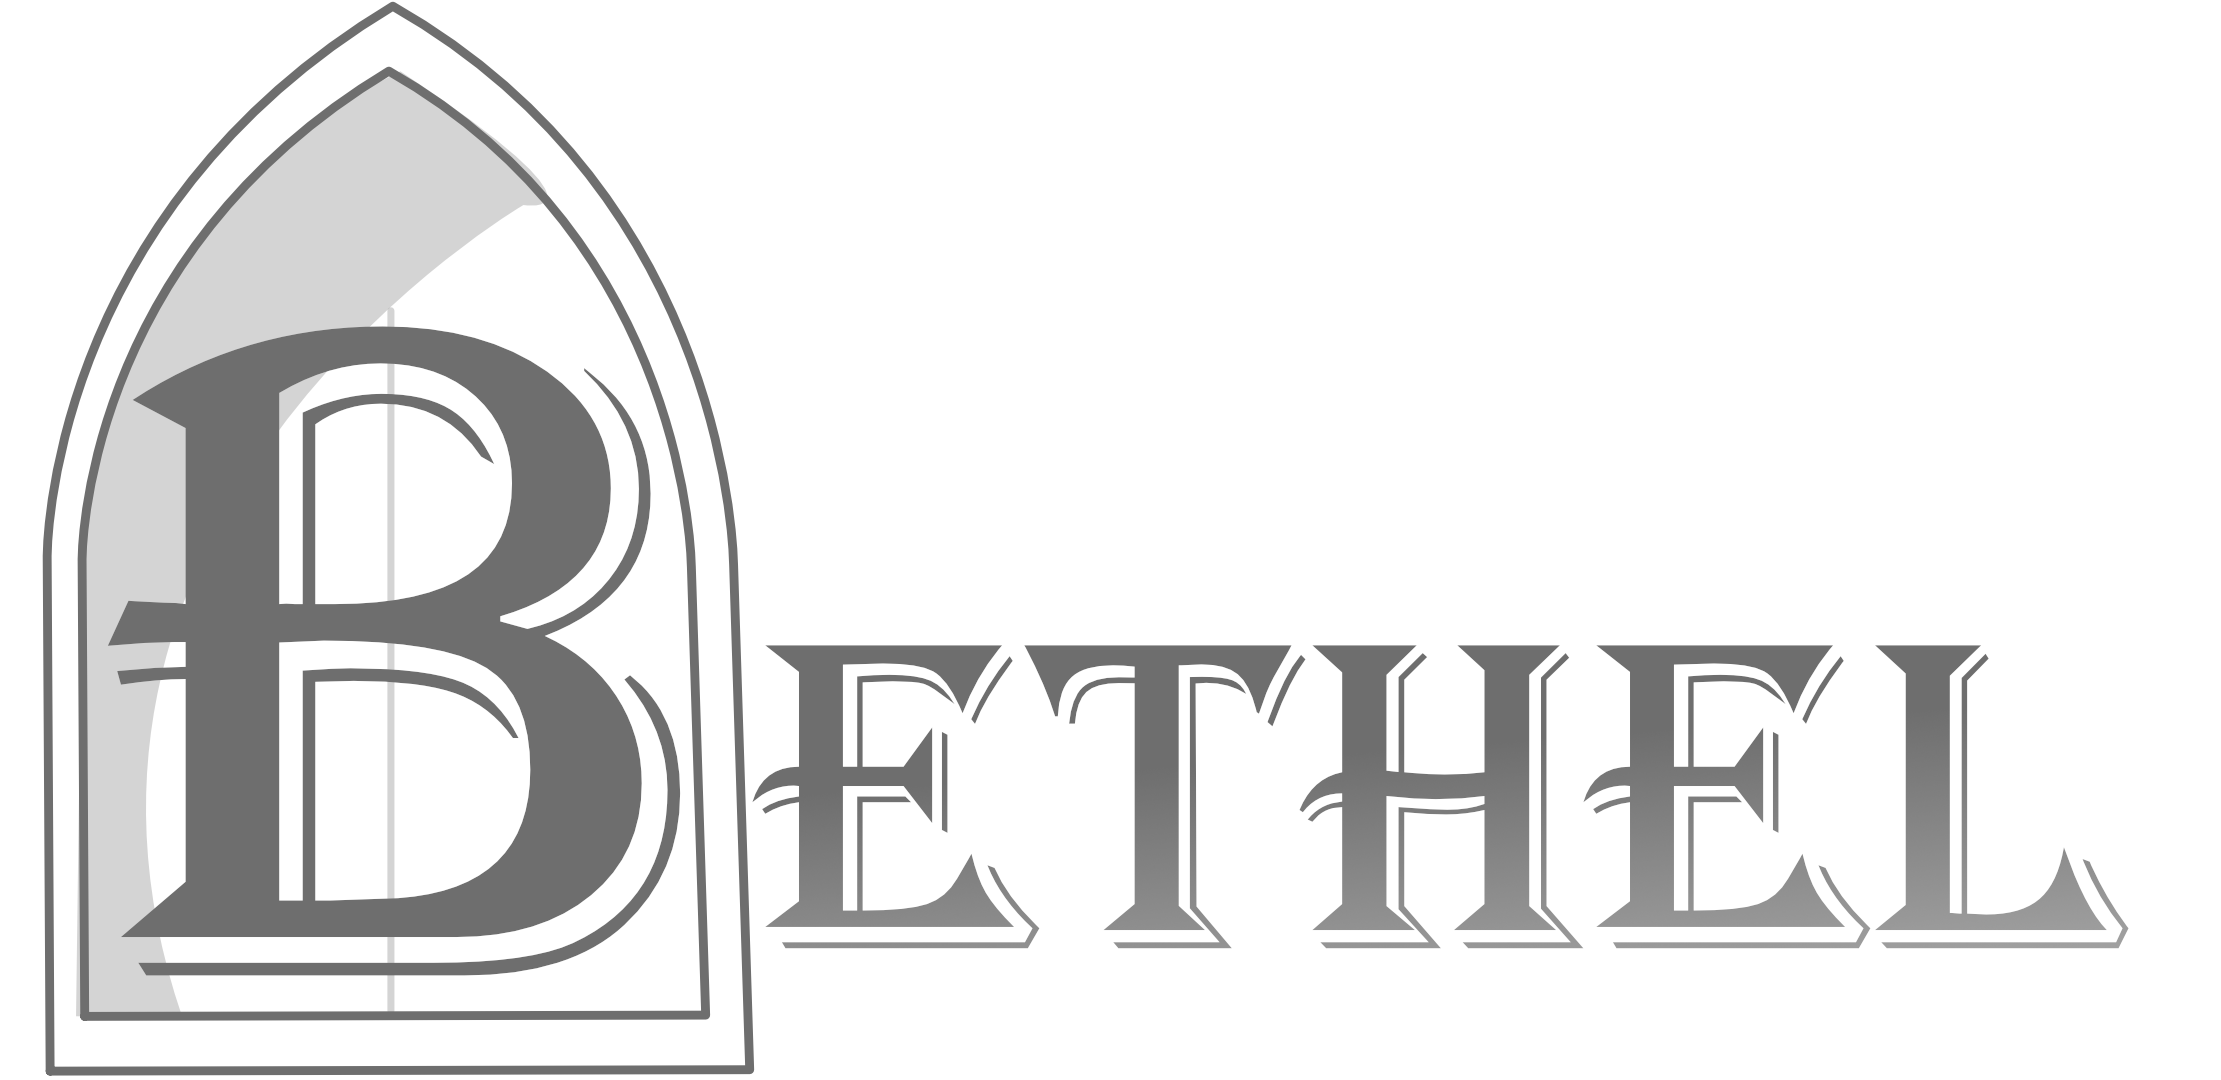 BBCA Logo - BBCA Baptist Church